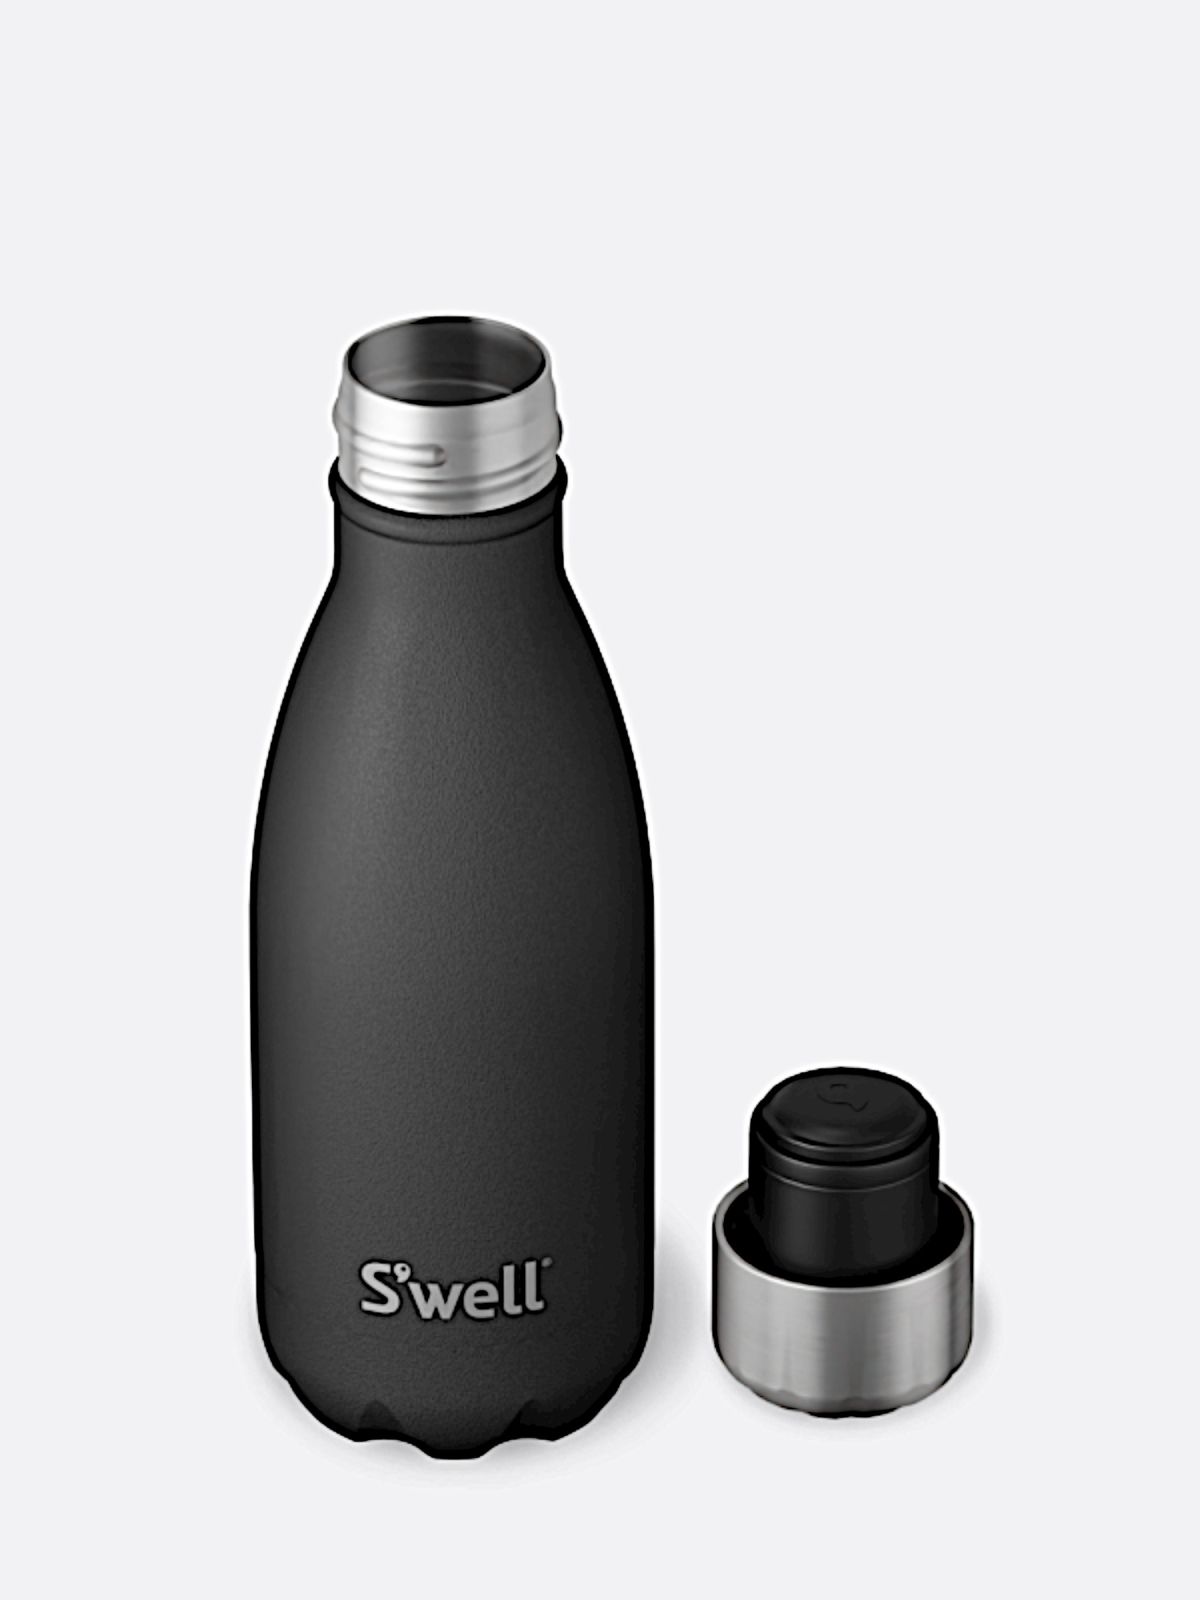  בקבוק תרמי עם לוגו של SWELL